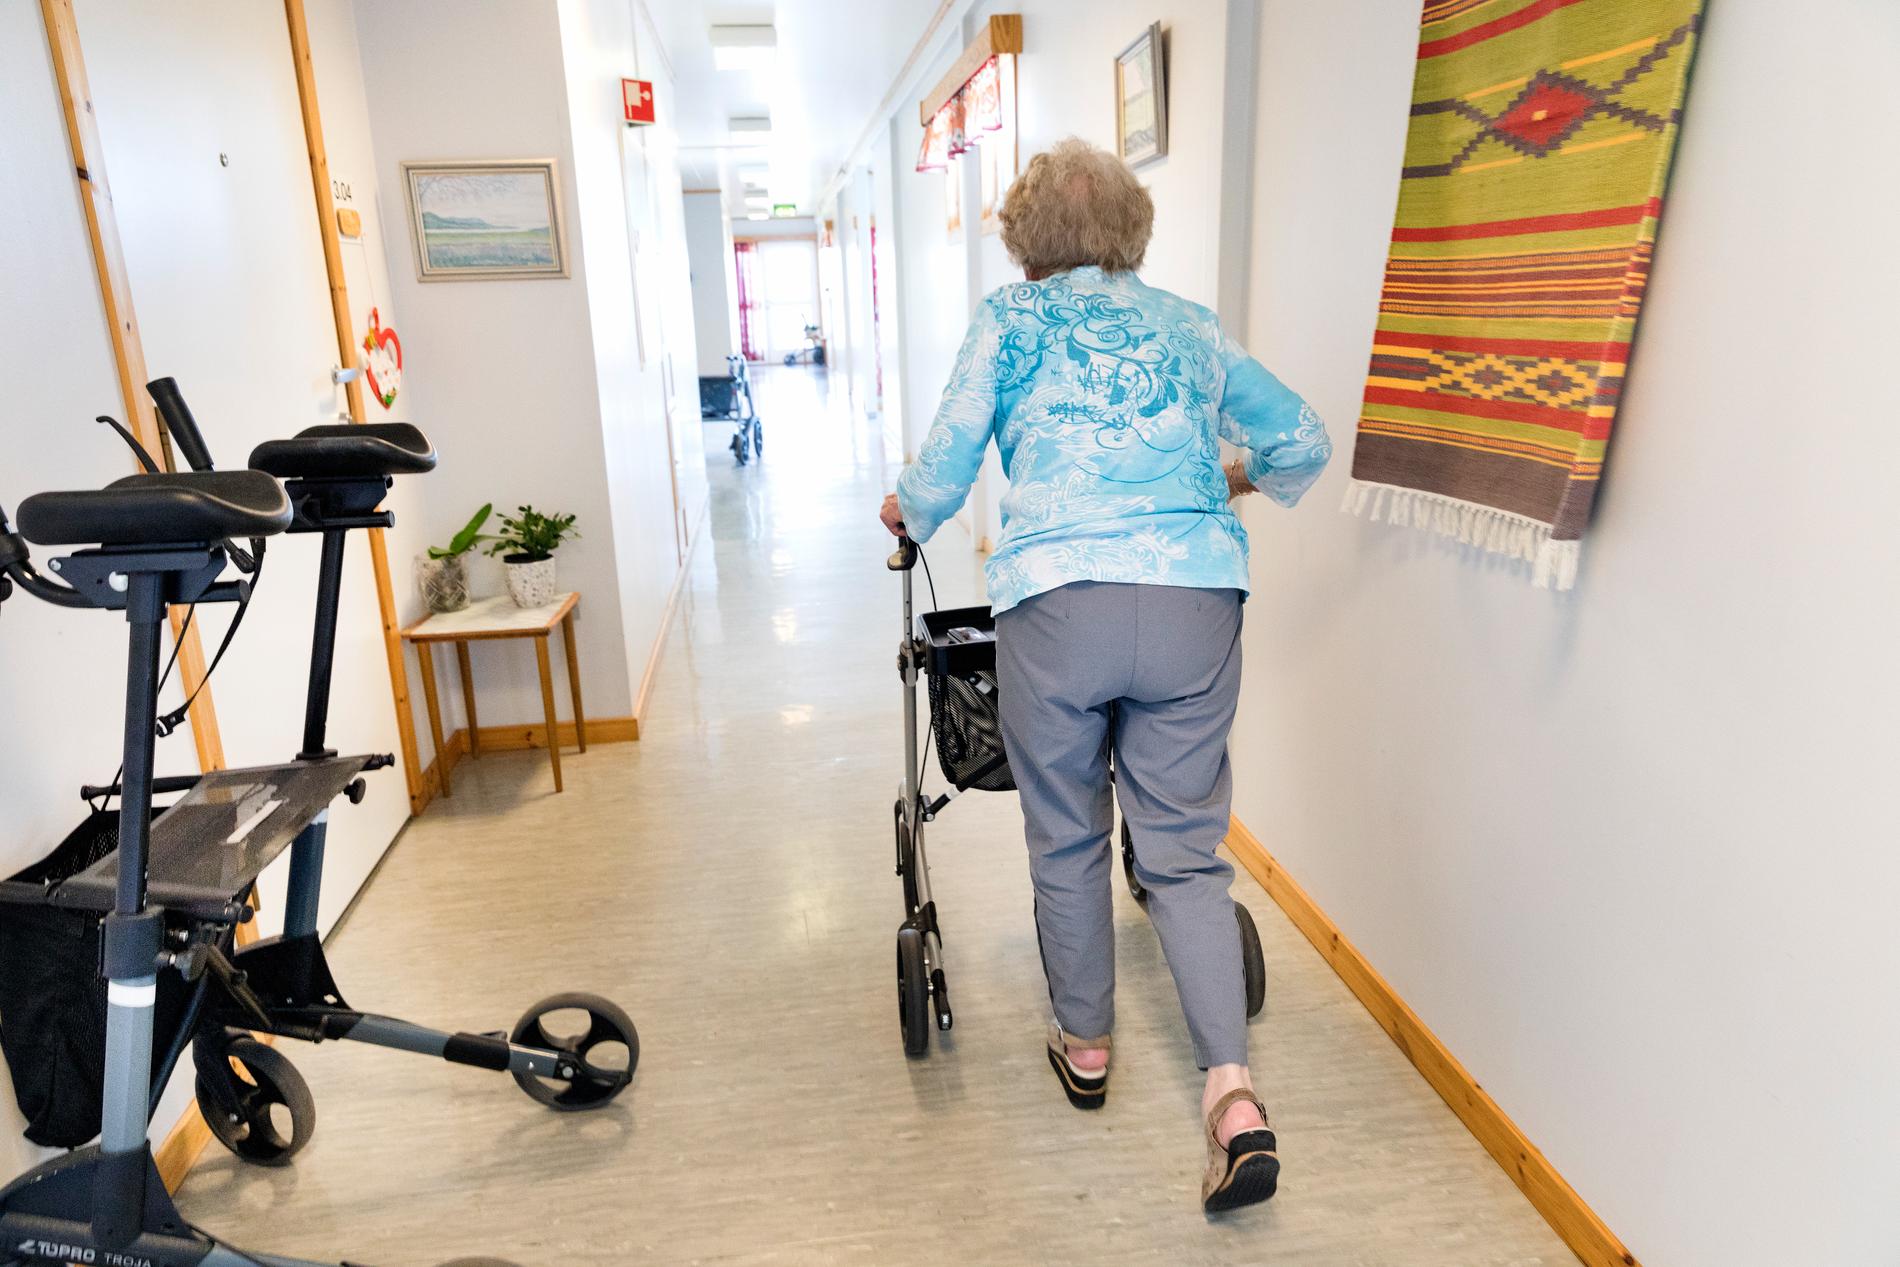 ”Vissa är svåra att hålla på rummen eftersom de är demenssjuka och springer runt mycket”, säger undersköterskan.